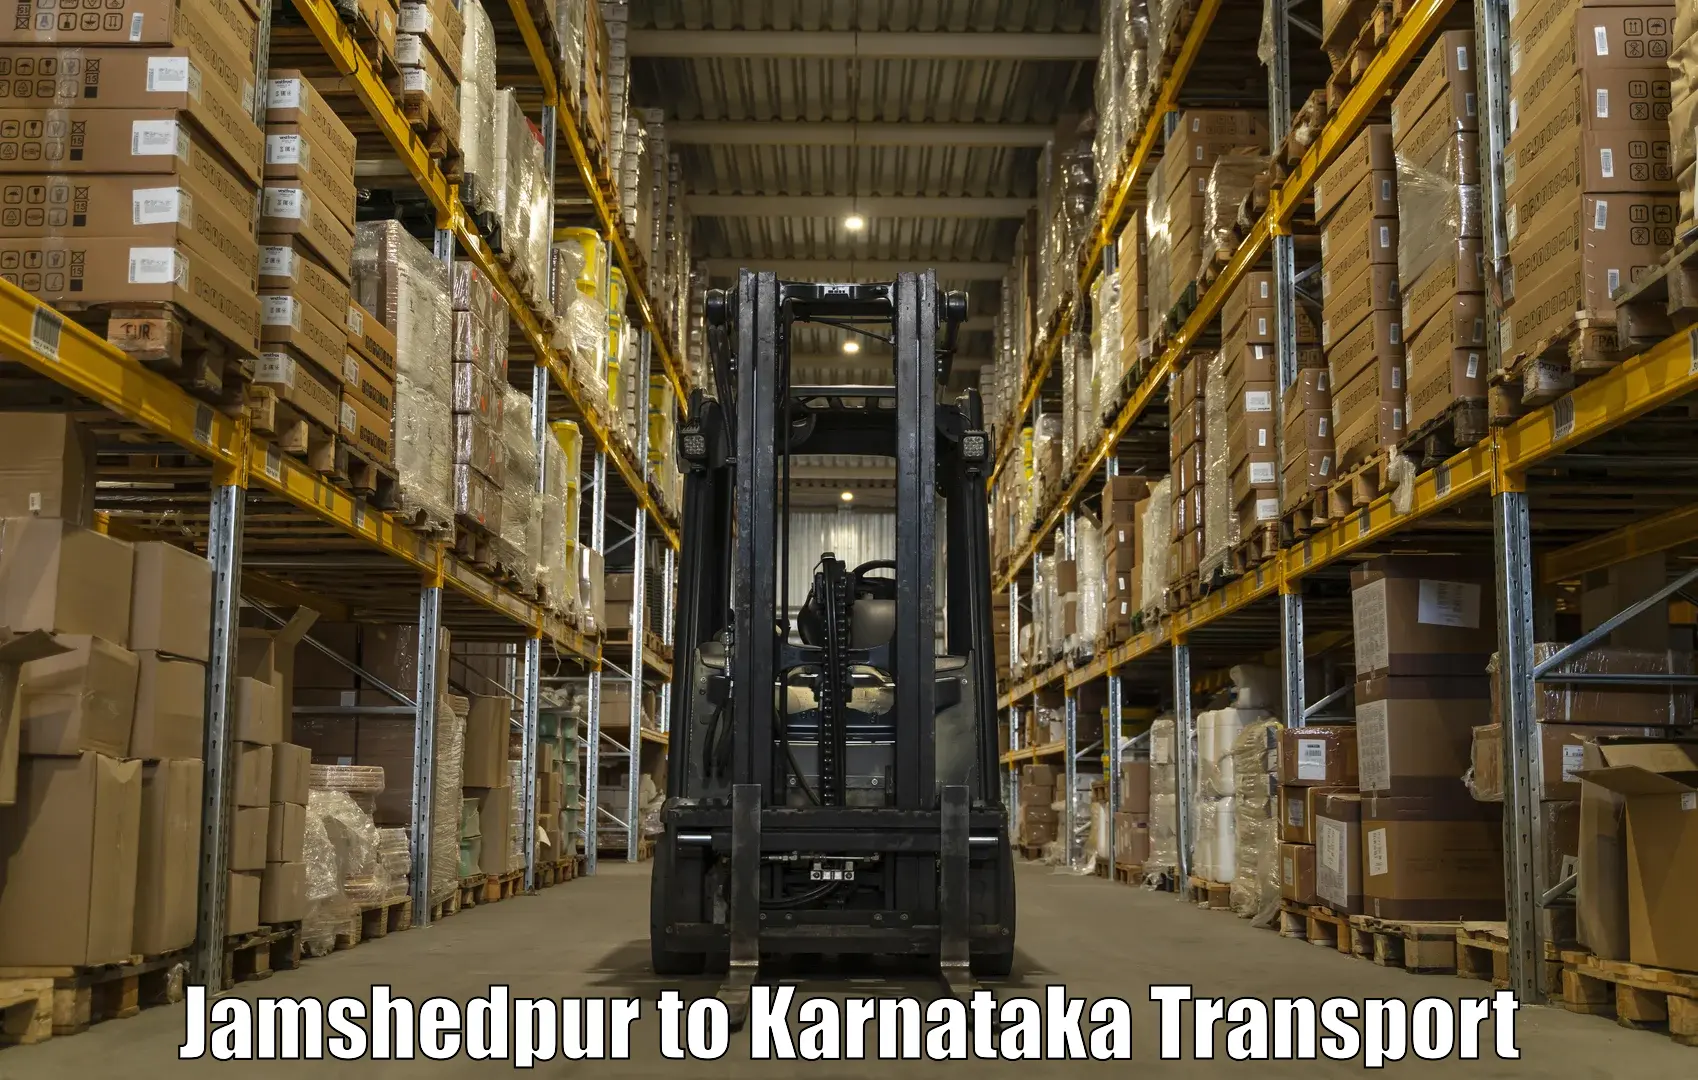 Goods delivery service Jamshedpur to Nanjangud